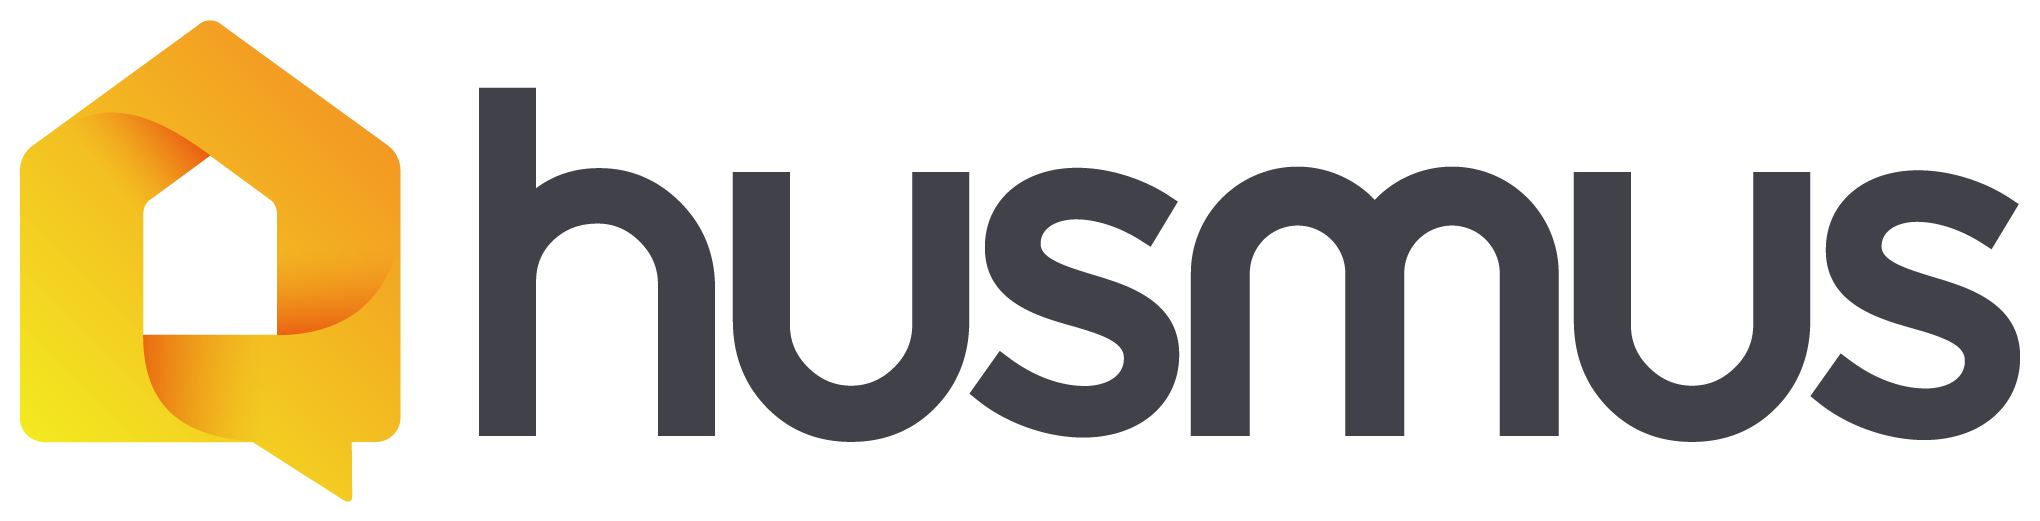 Husmus logo